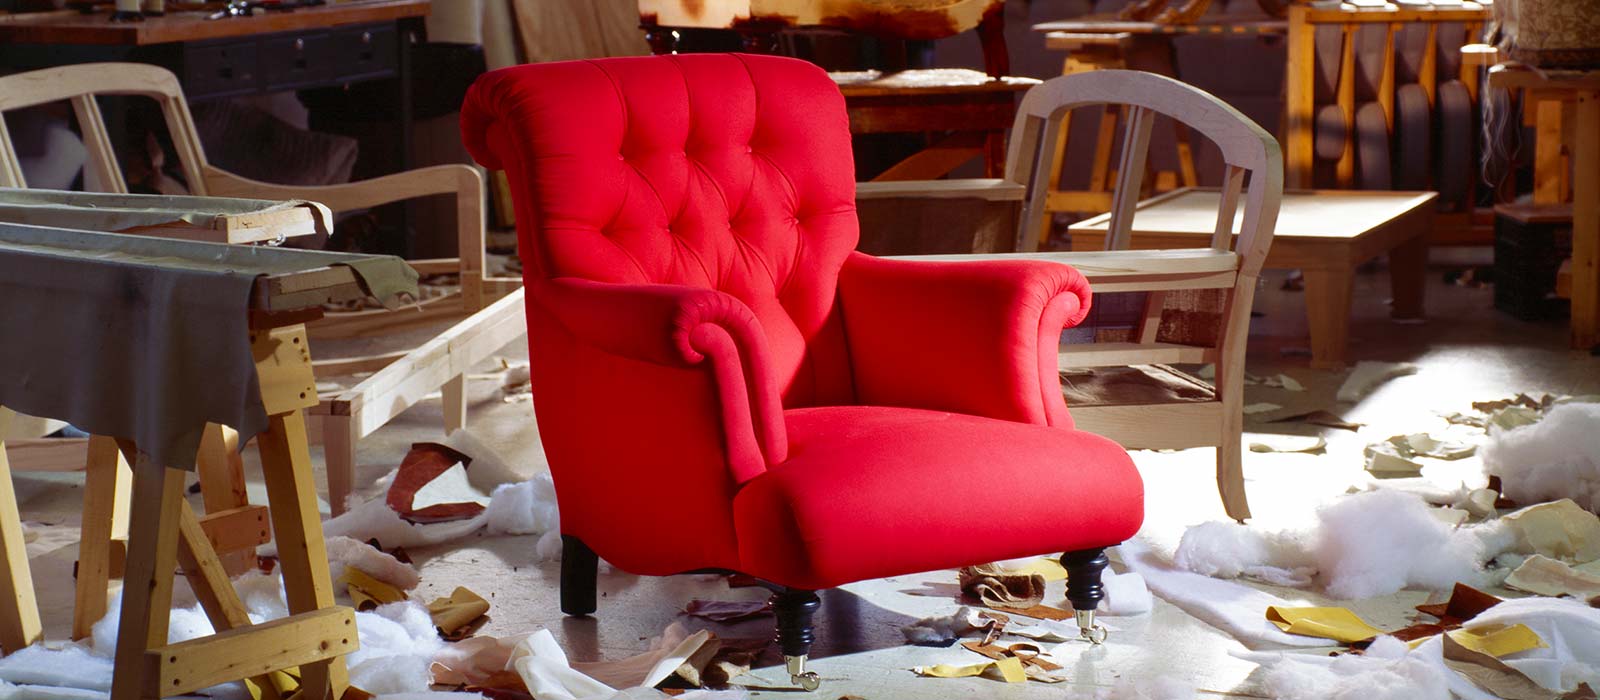 Custom Upholstered Chair